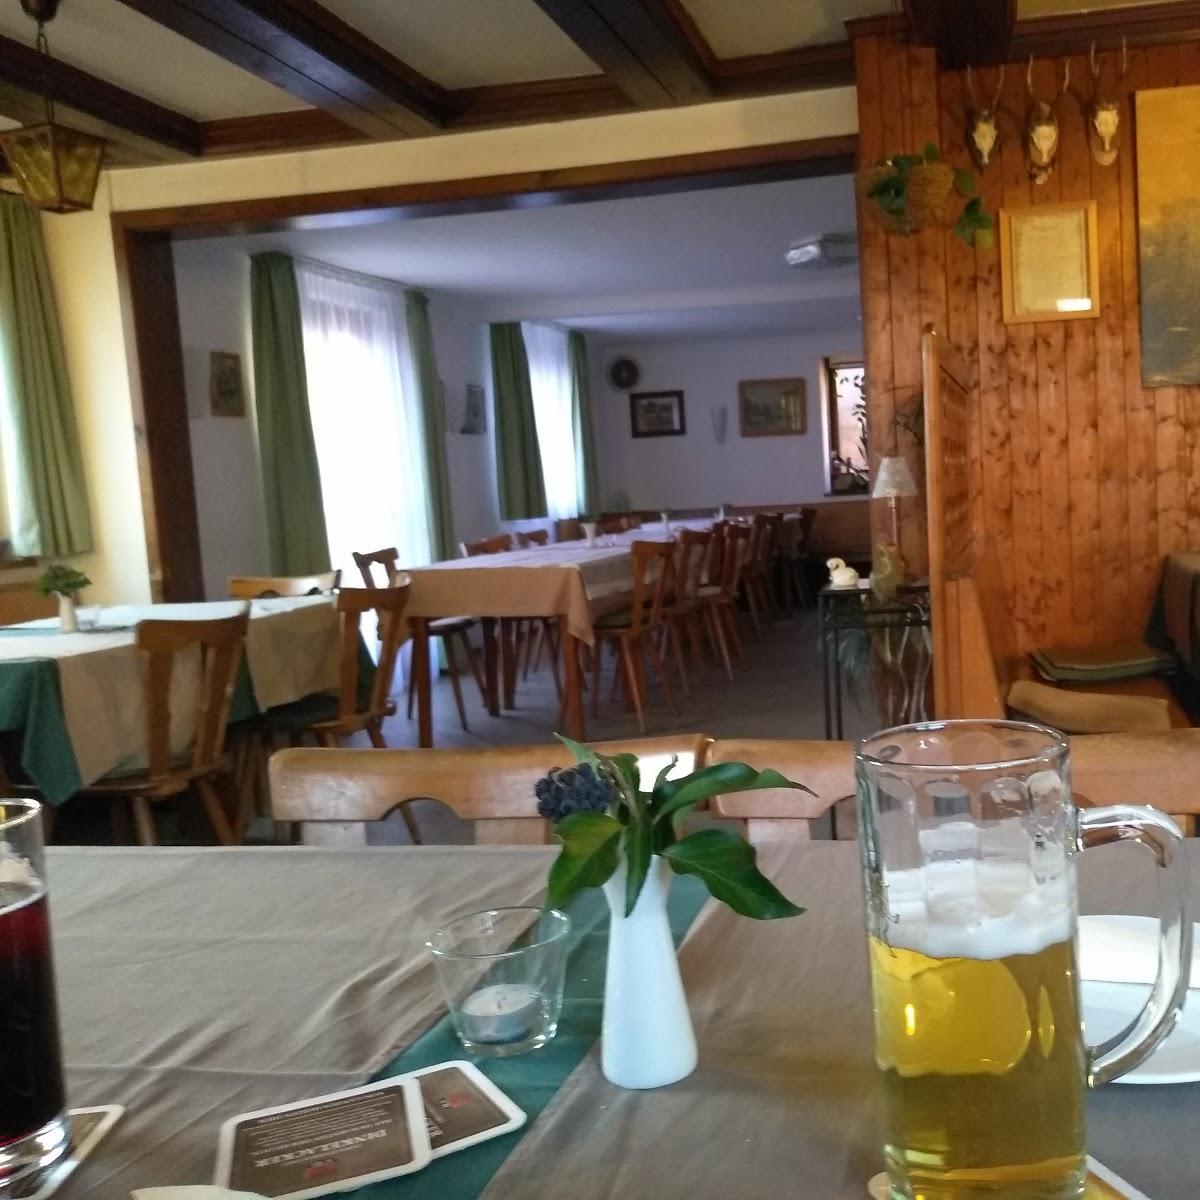 Restaurant "Zum Goldenen Ritter" in  Spiegelberg